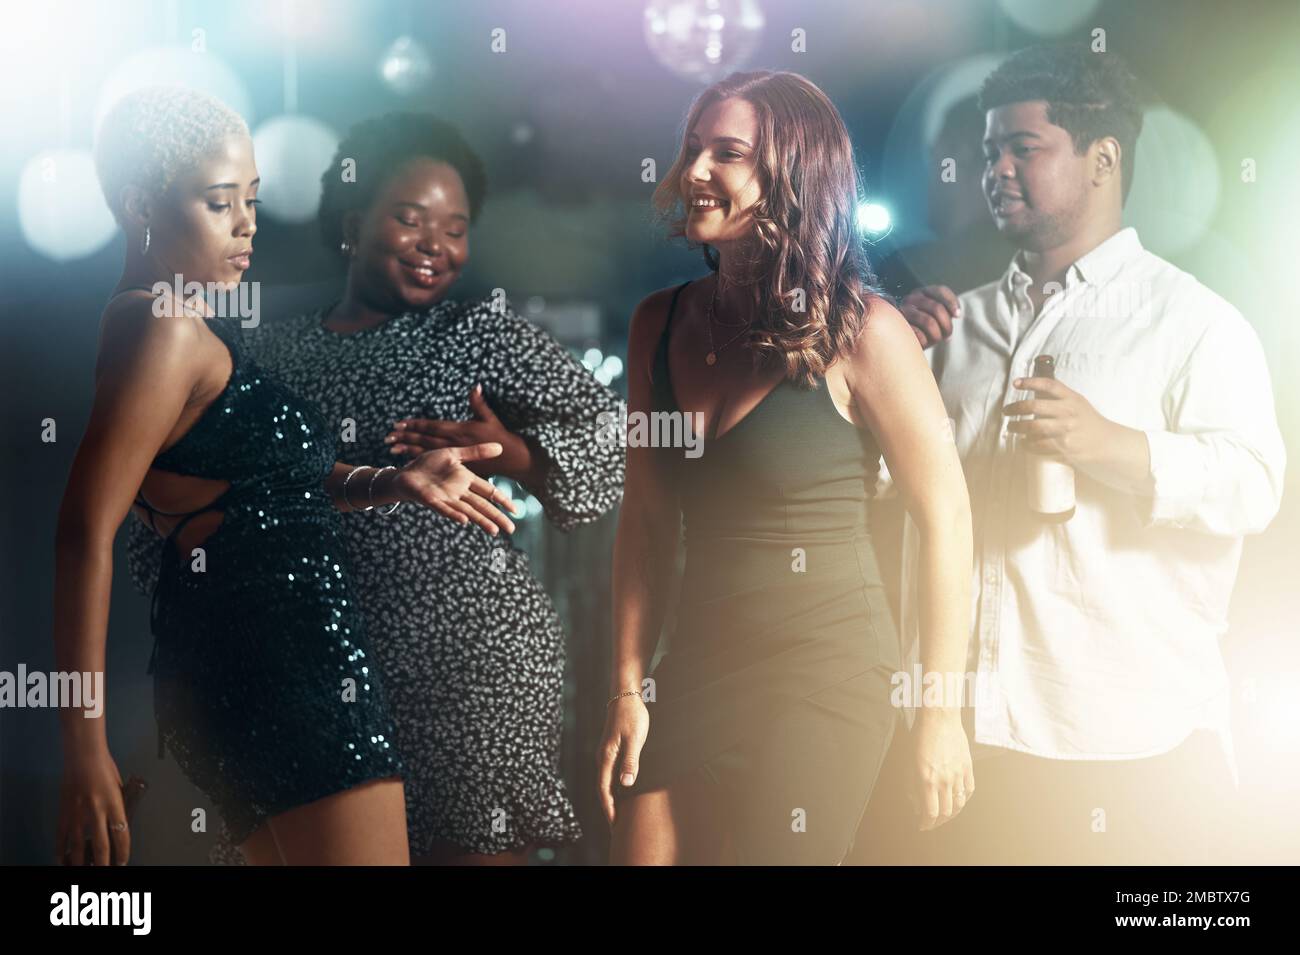 Les gens, la diversité ou la danse sur la piste de danse dans la fête, la discothèque ou bokeh disco pour la fête d'anniversaire. Sourire, heureux ou danseur amis de collage Banque D'Images